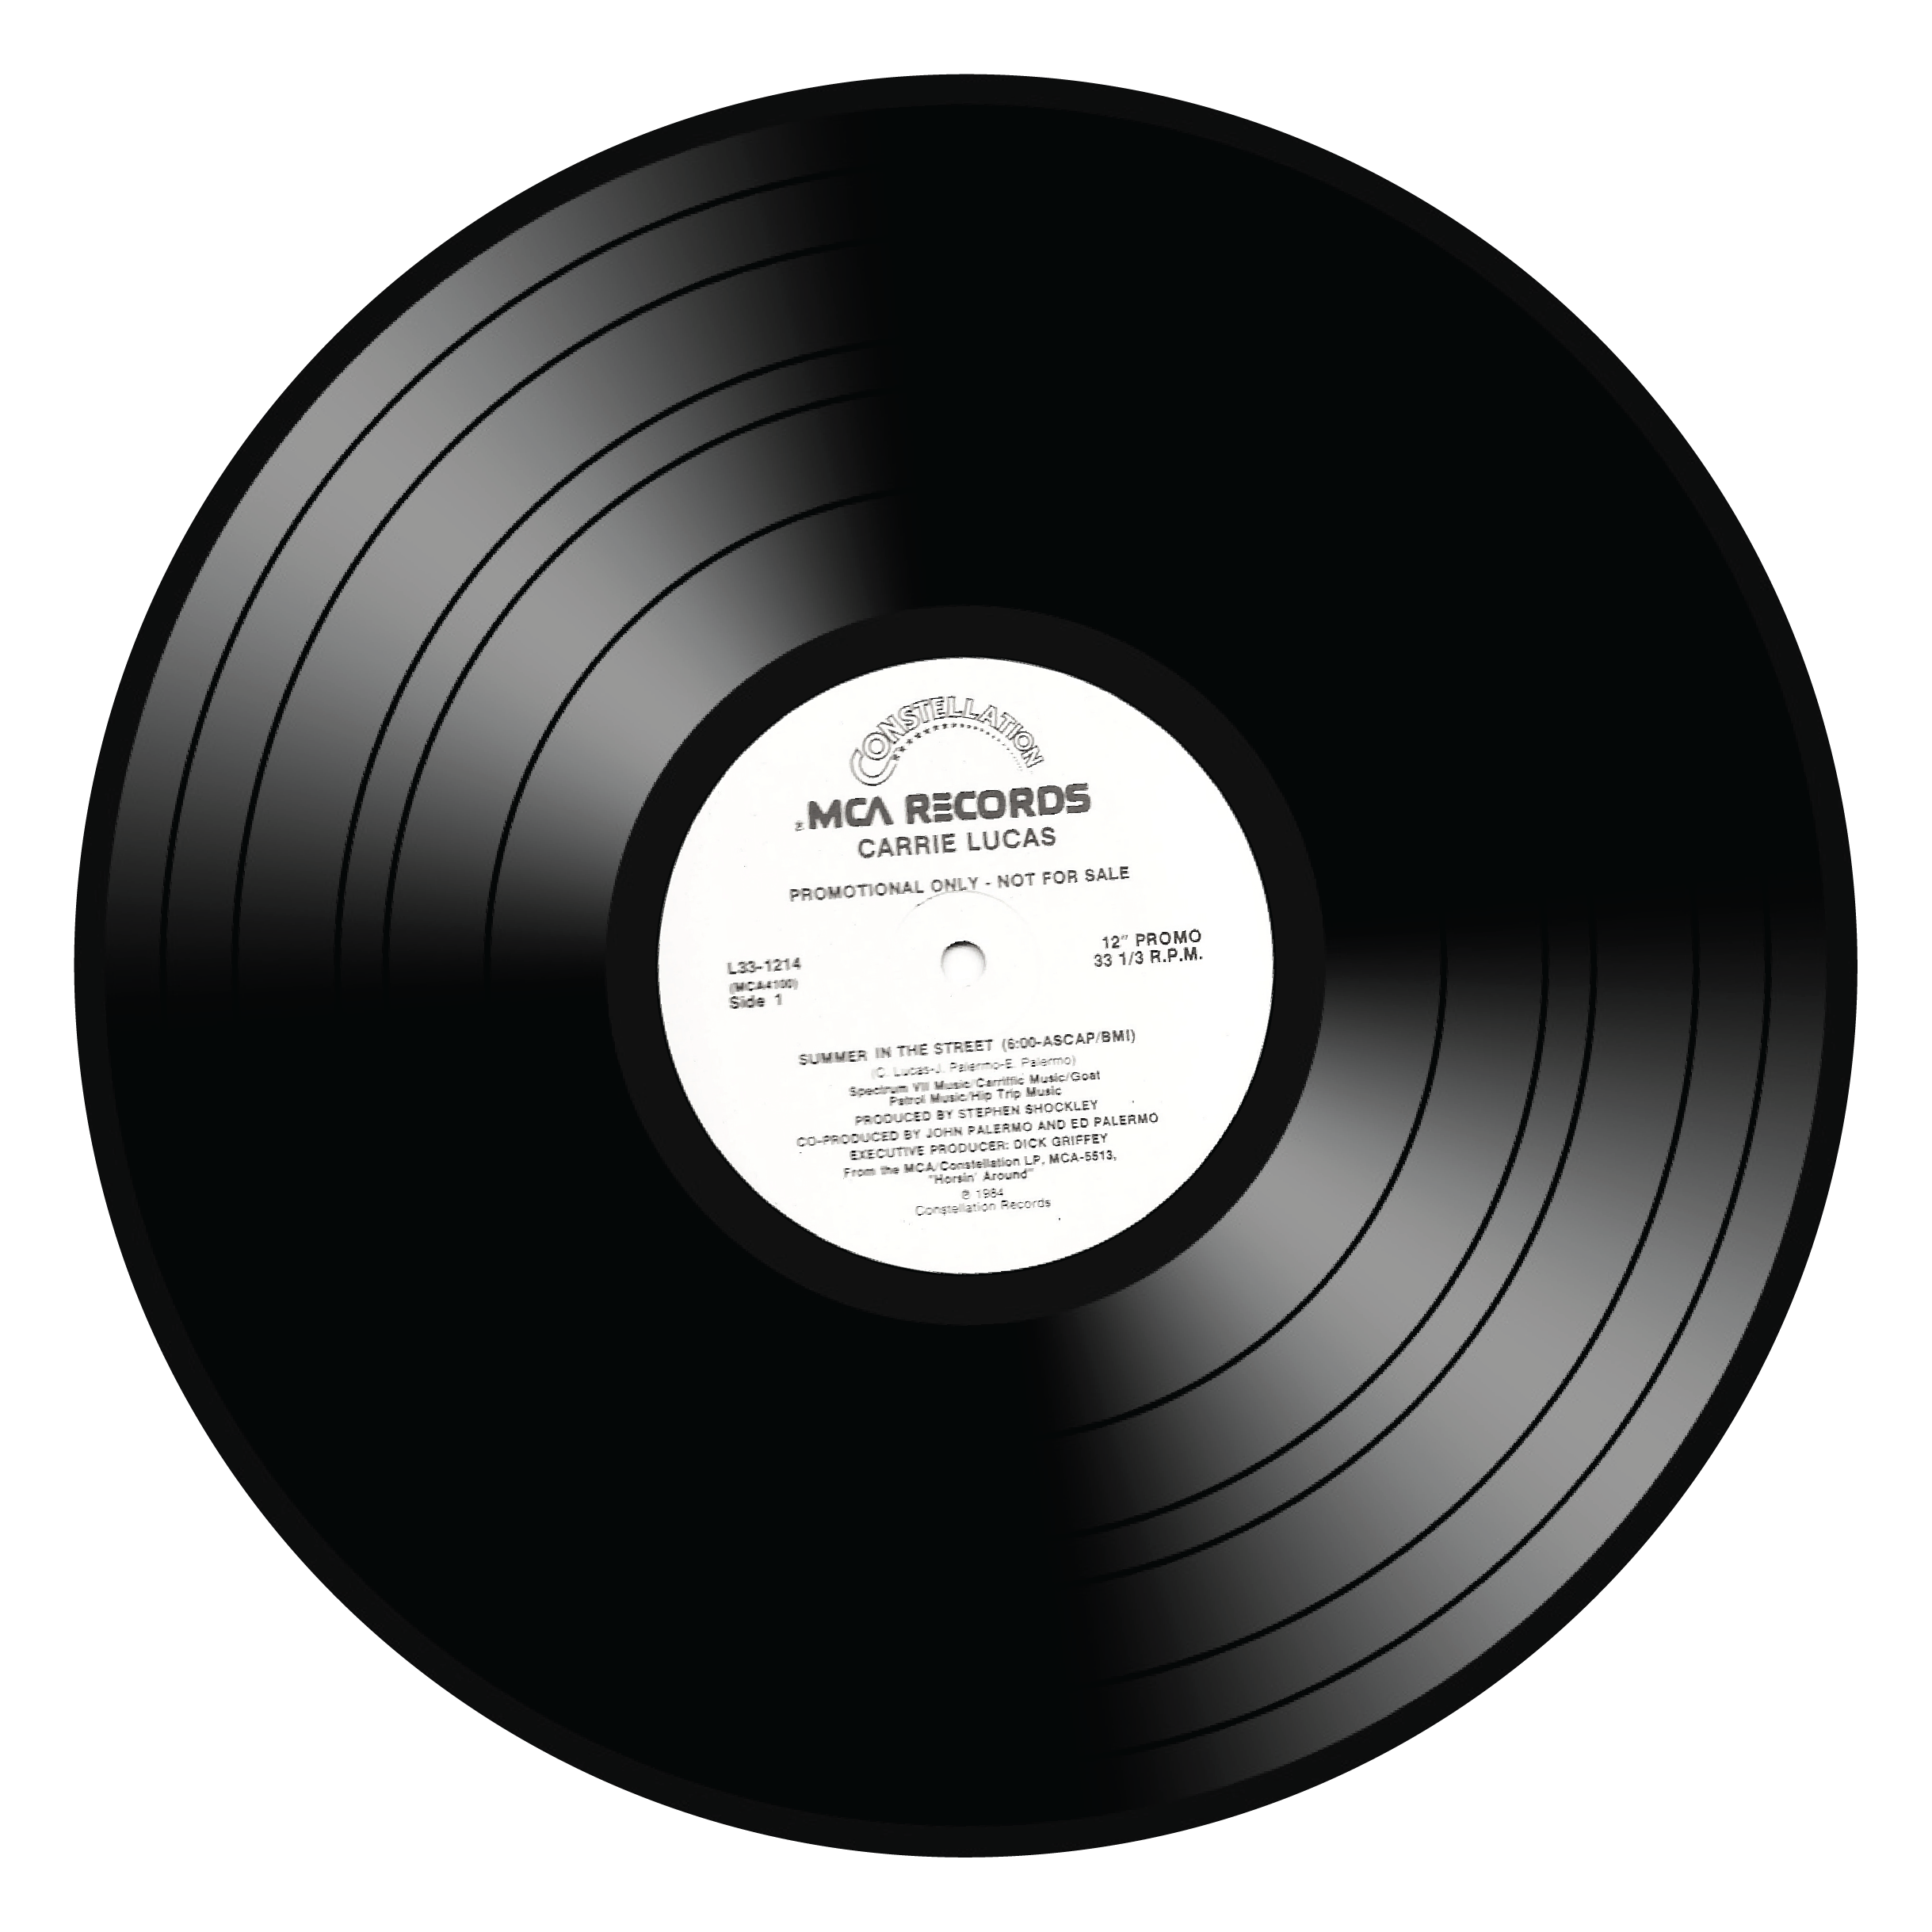 ... vinyl record clip art sof